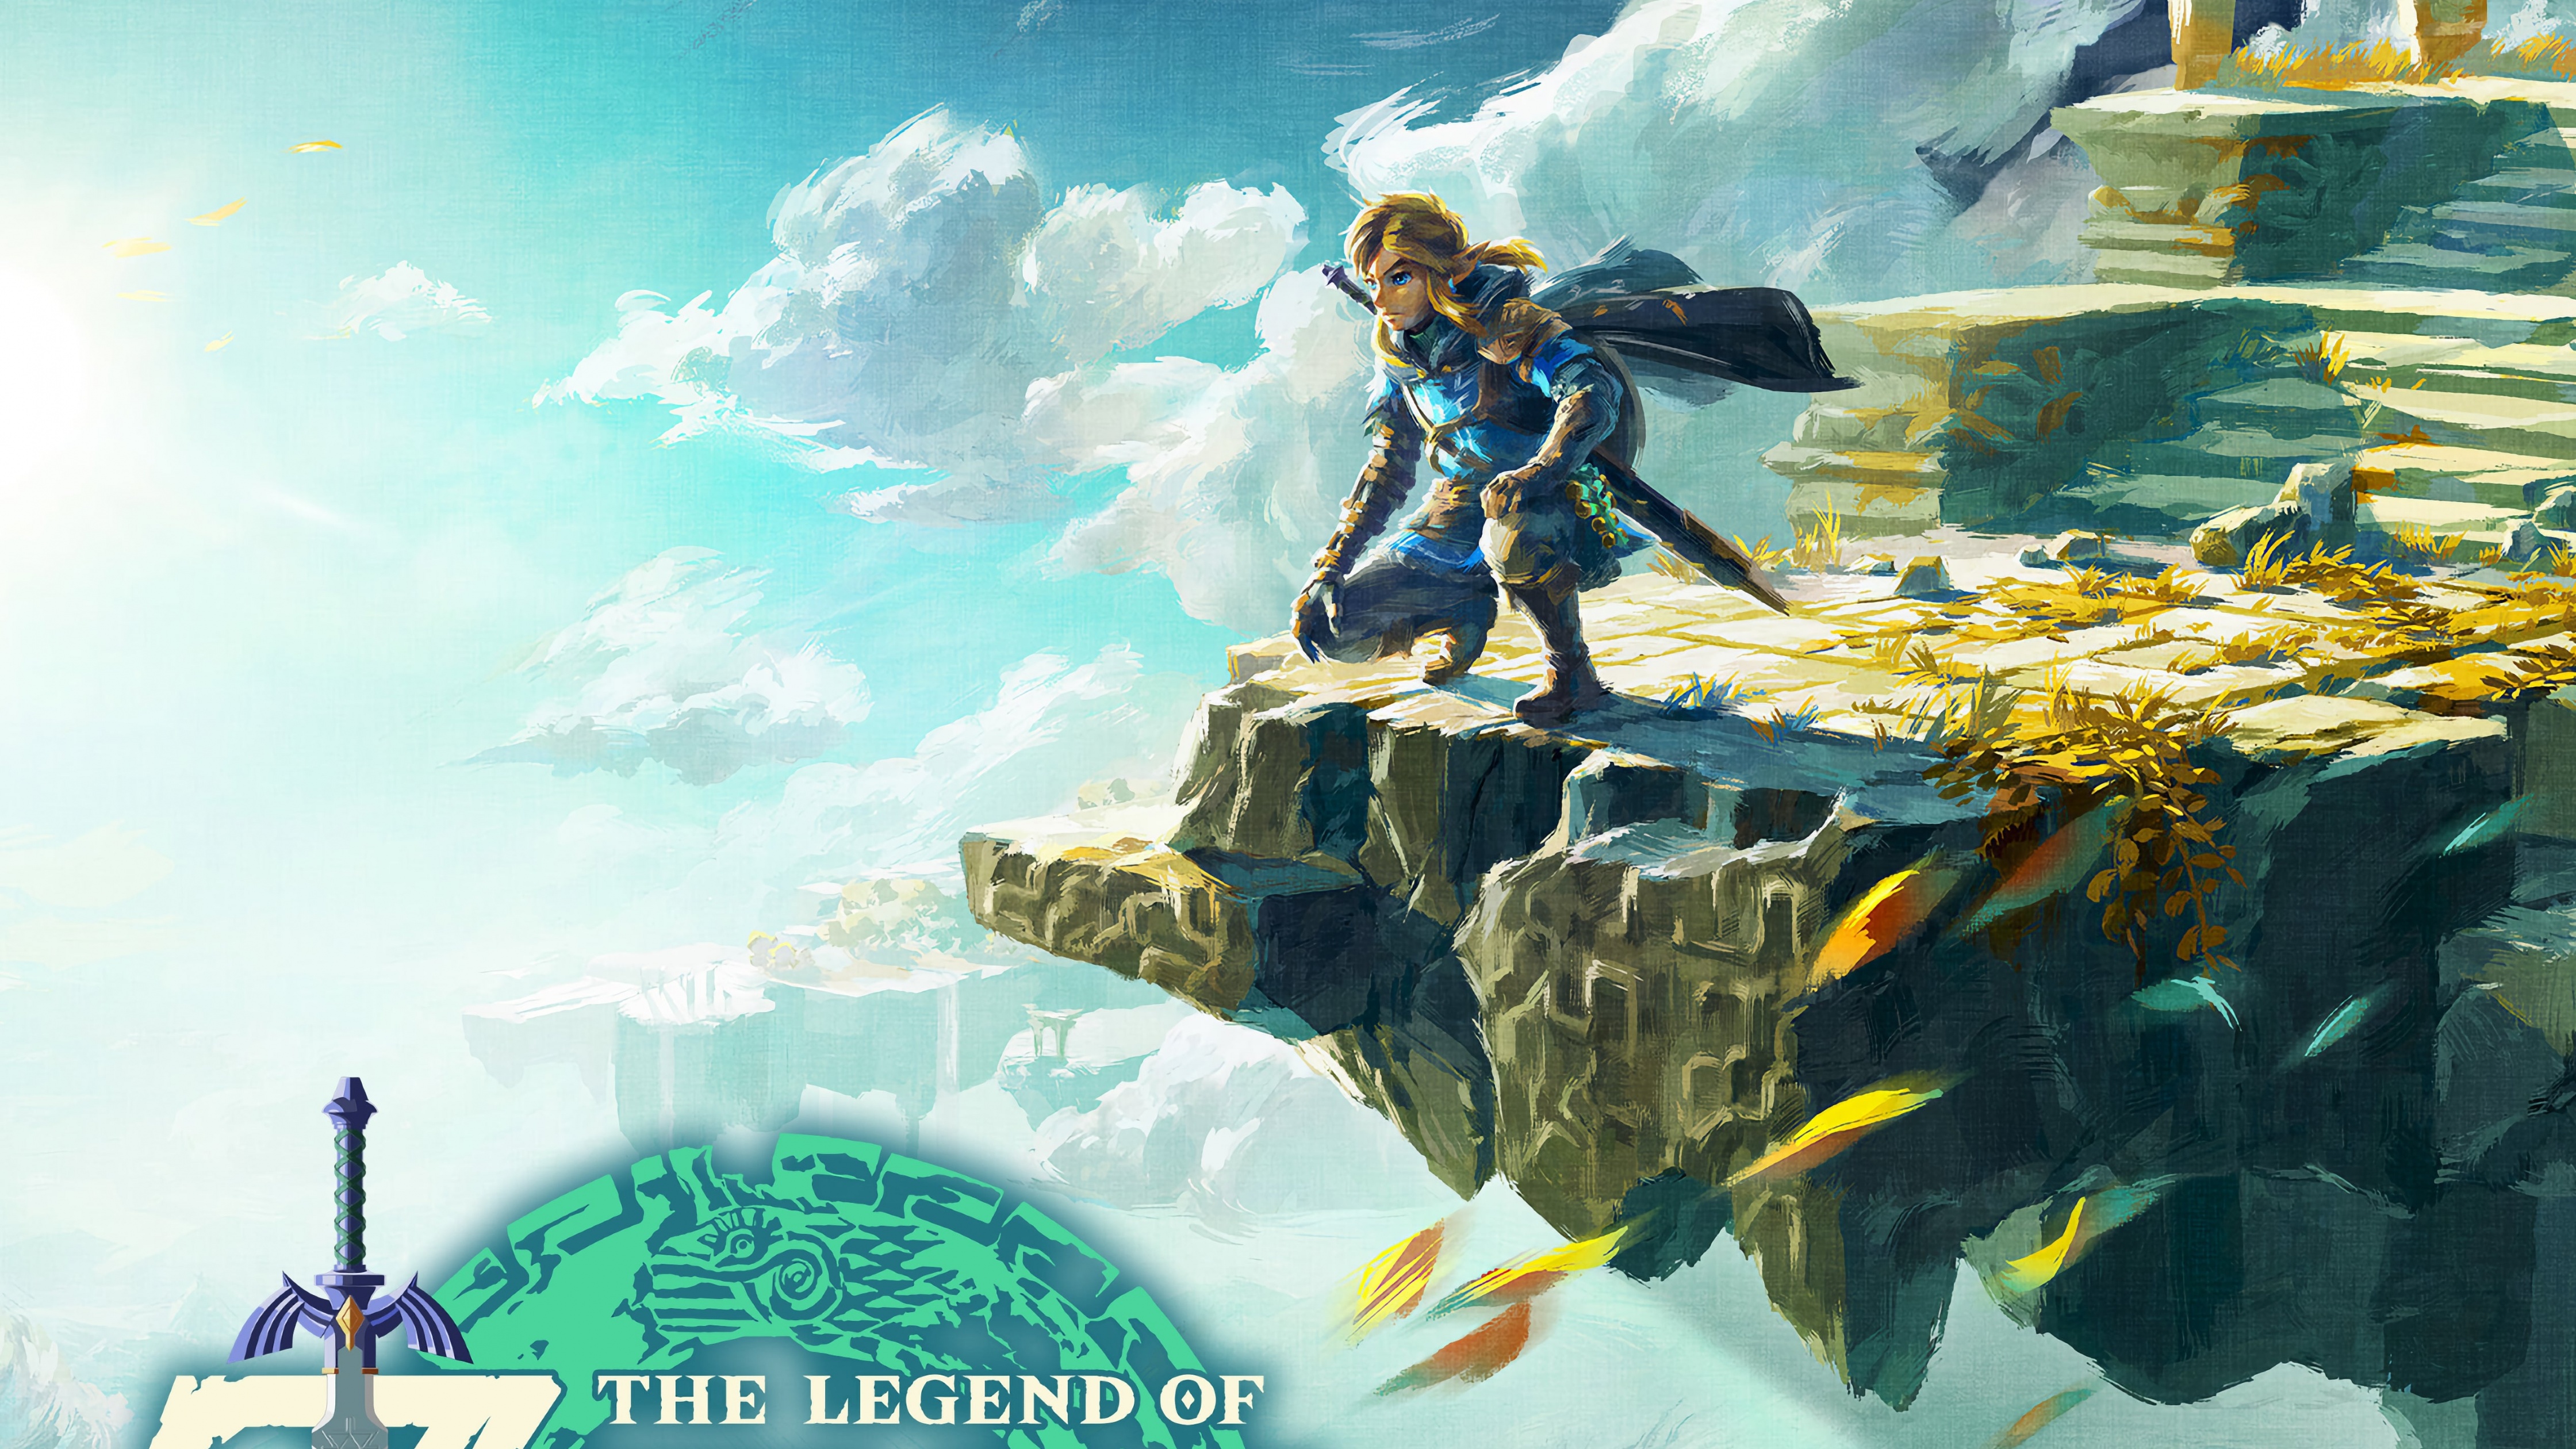 The Legend of Zelda Breath of the Wild 4K wallpaper download